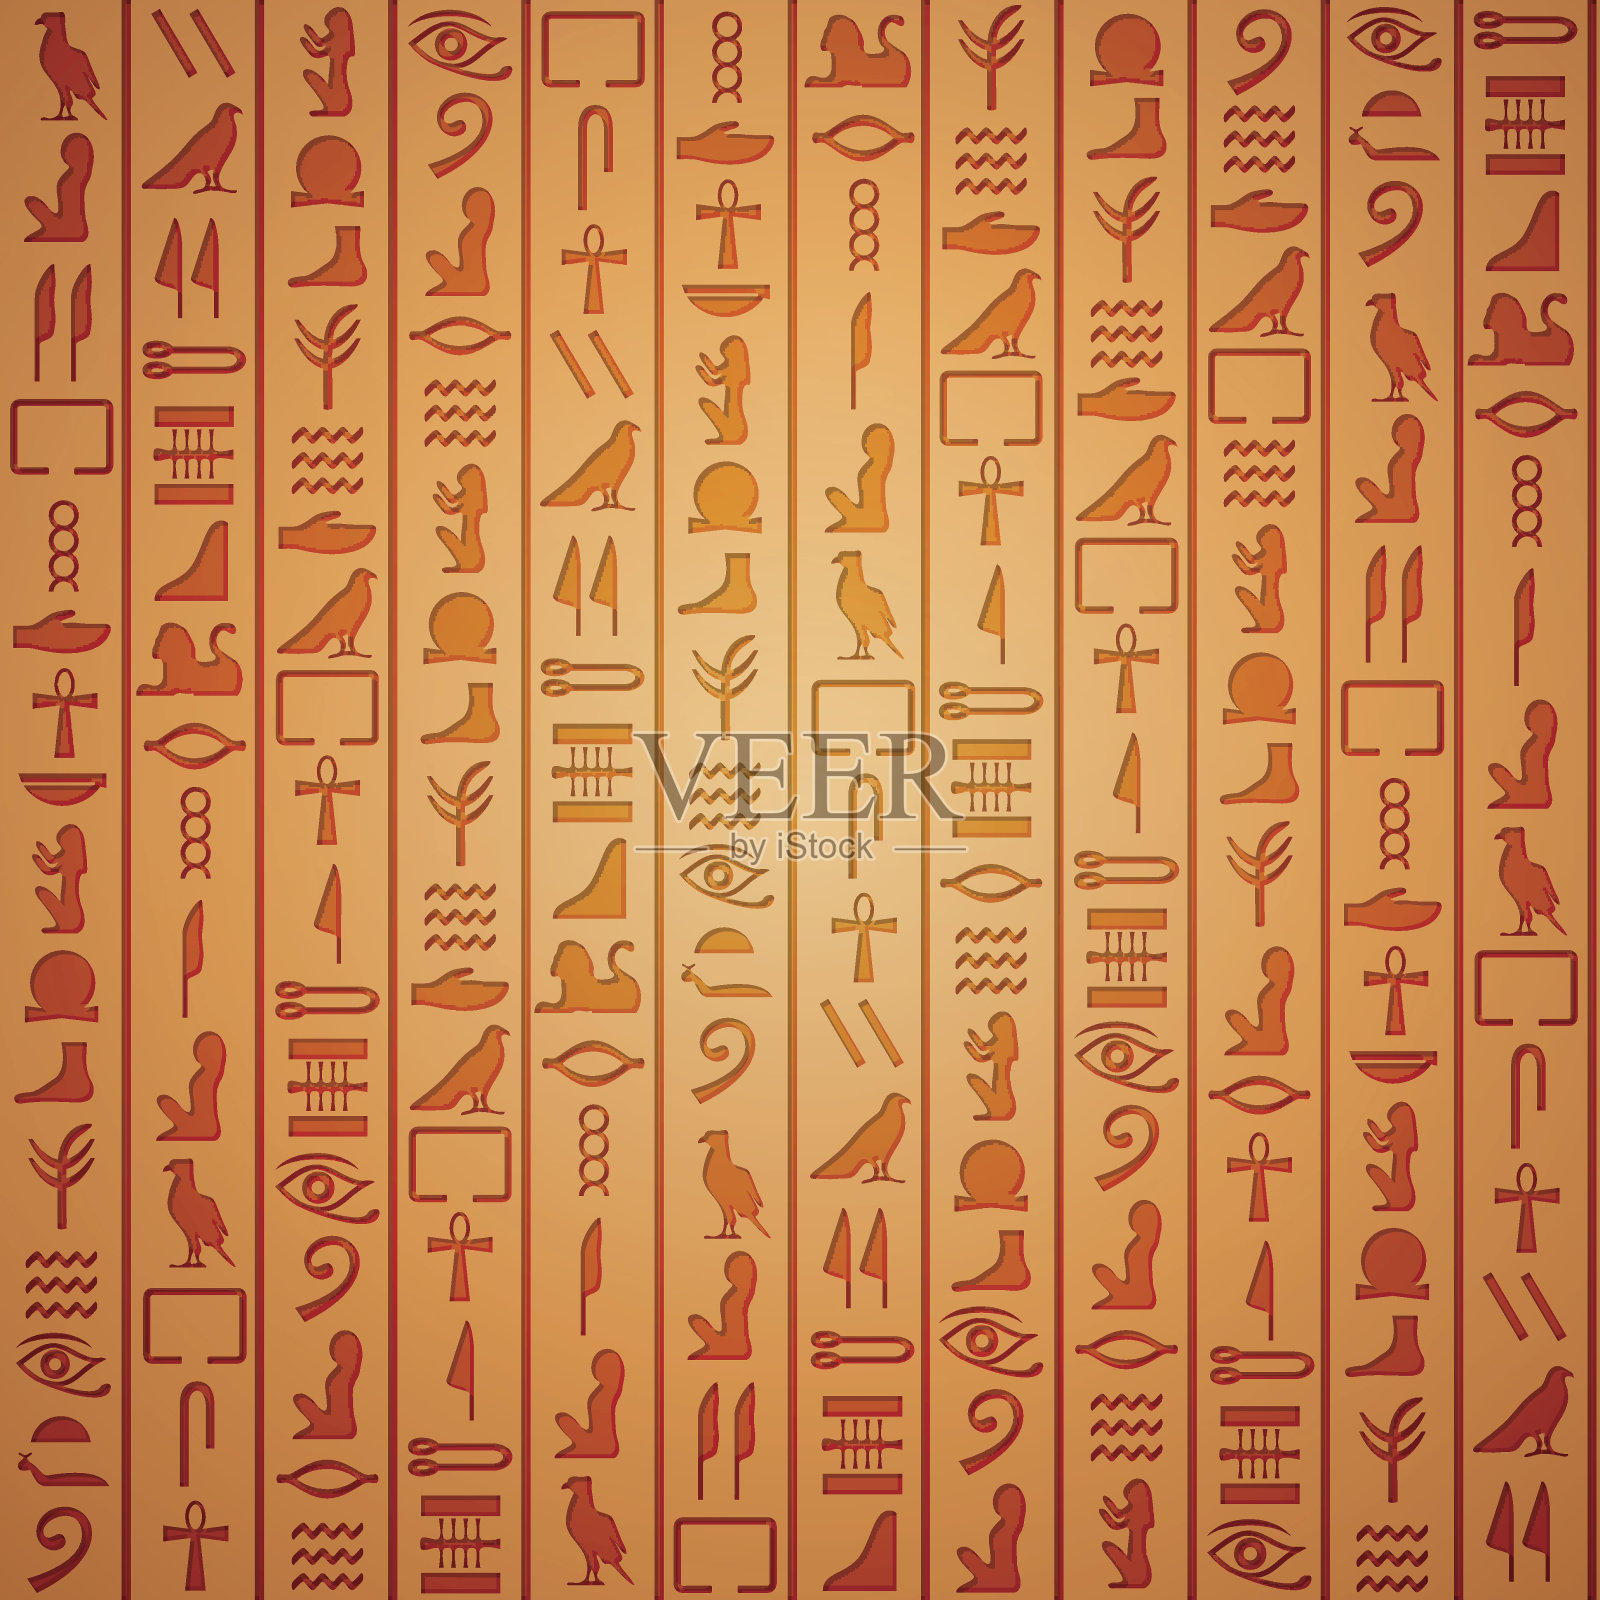 埃及象形文字背景插画图片素材